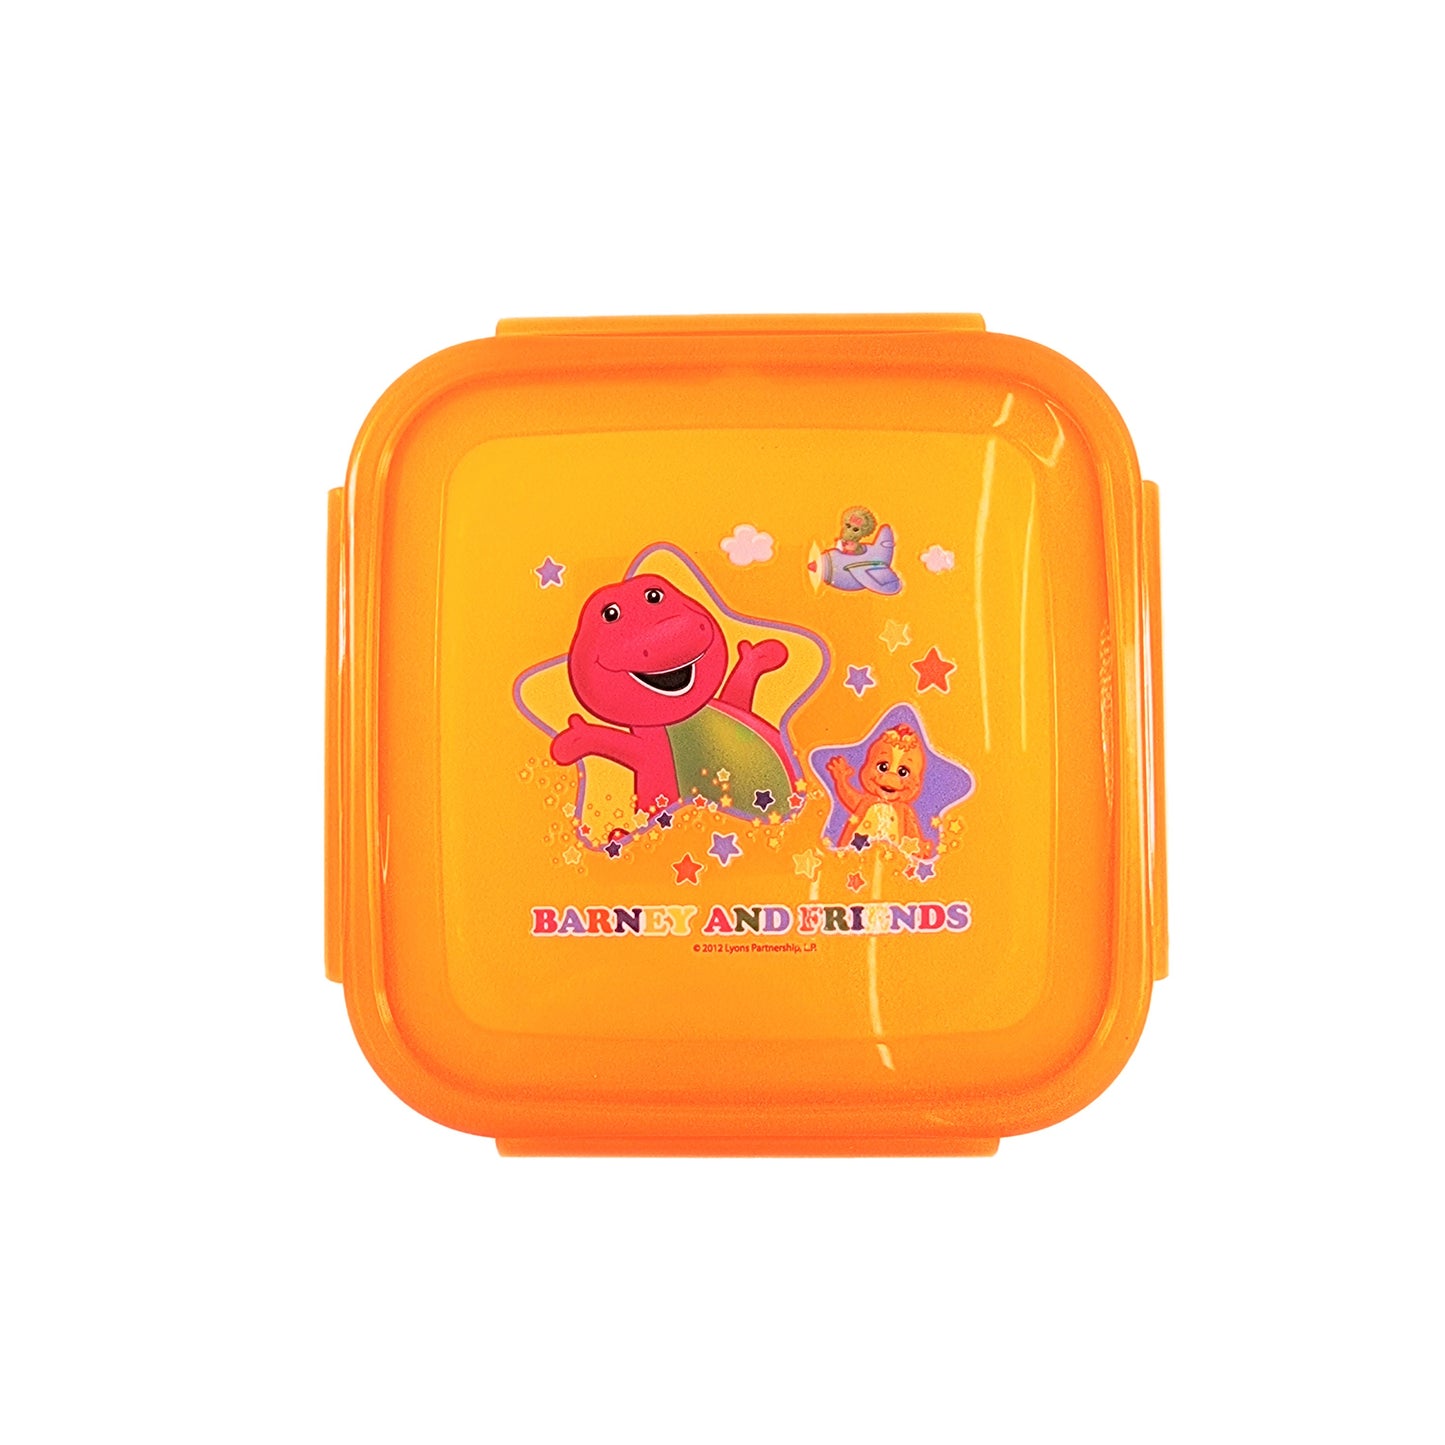 Barney & Friends - Snap-lock Lunch Sandwich Box (500ml)